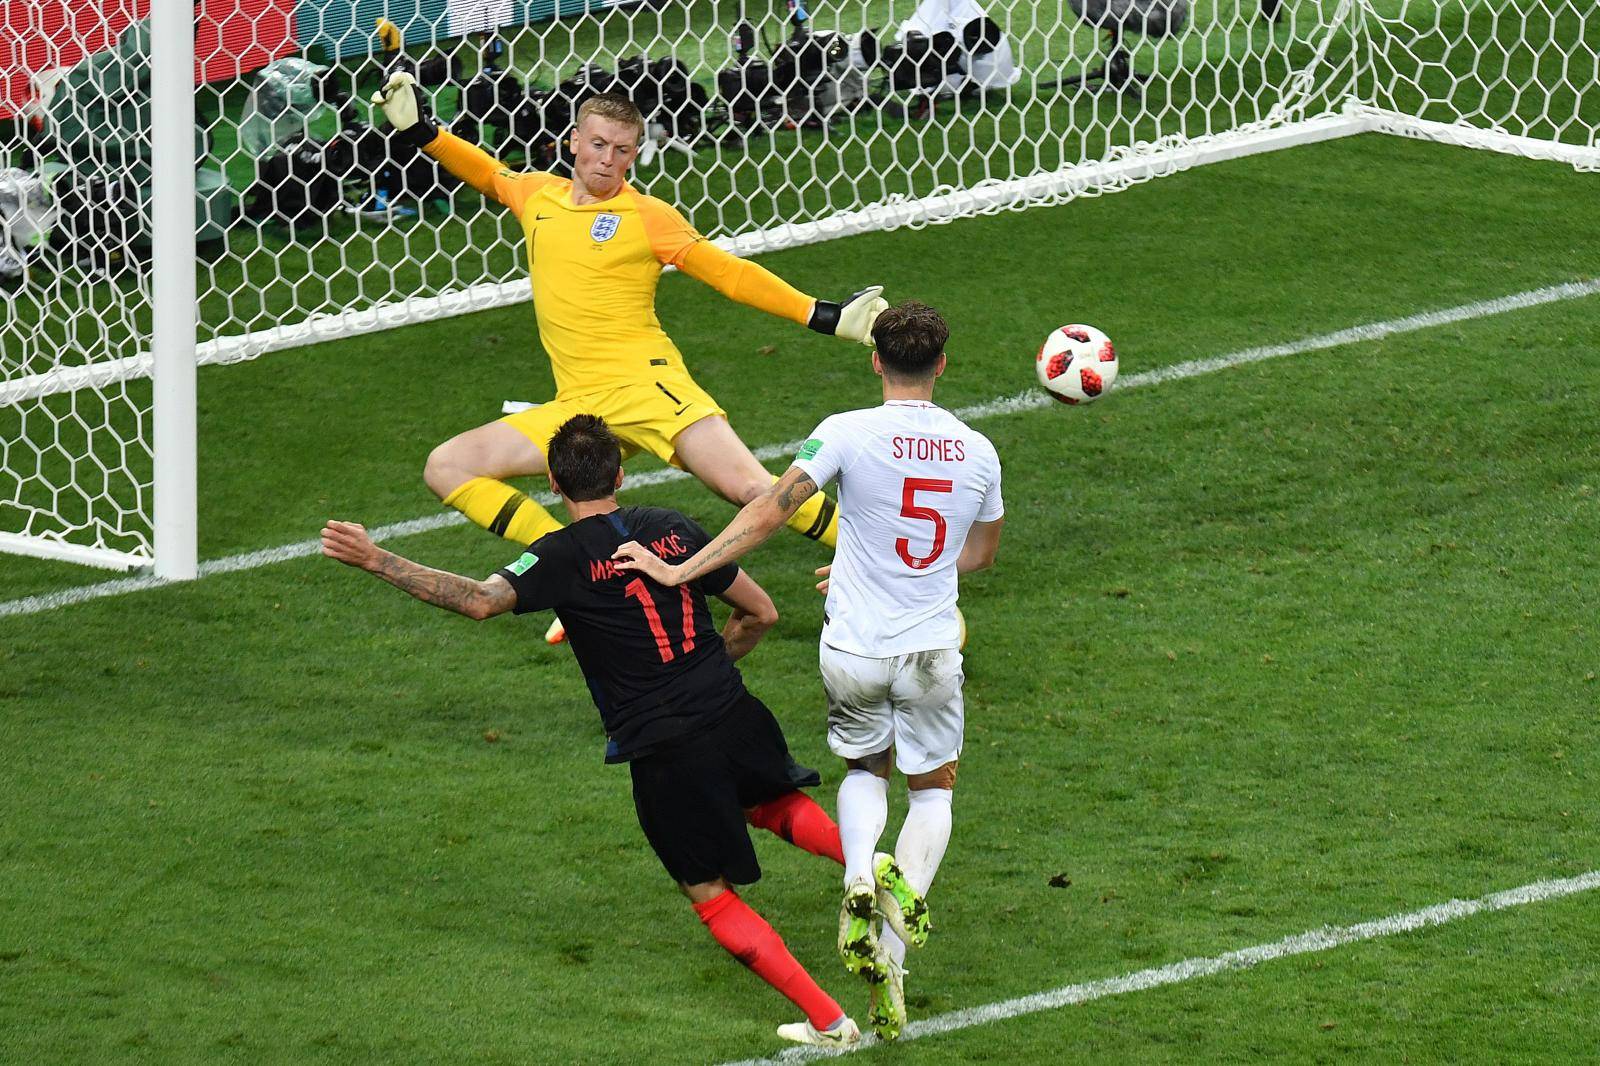 FIFA World Cup 2018 / Semi-finals / Croatia - England 2-1 nV.